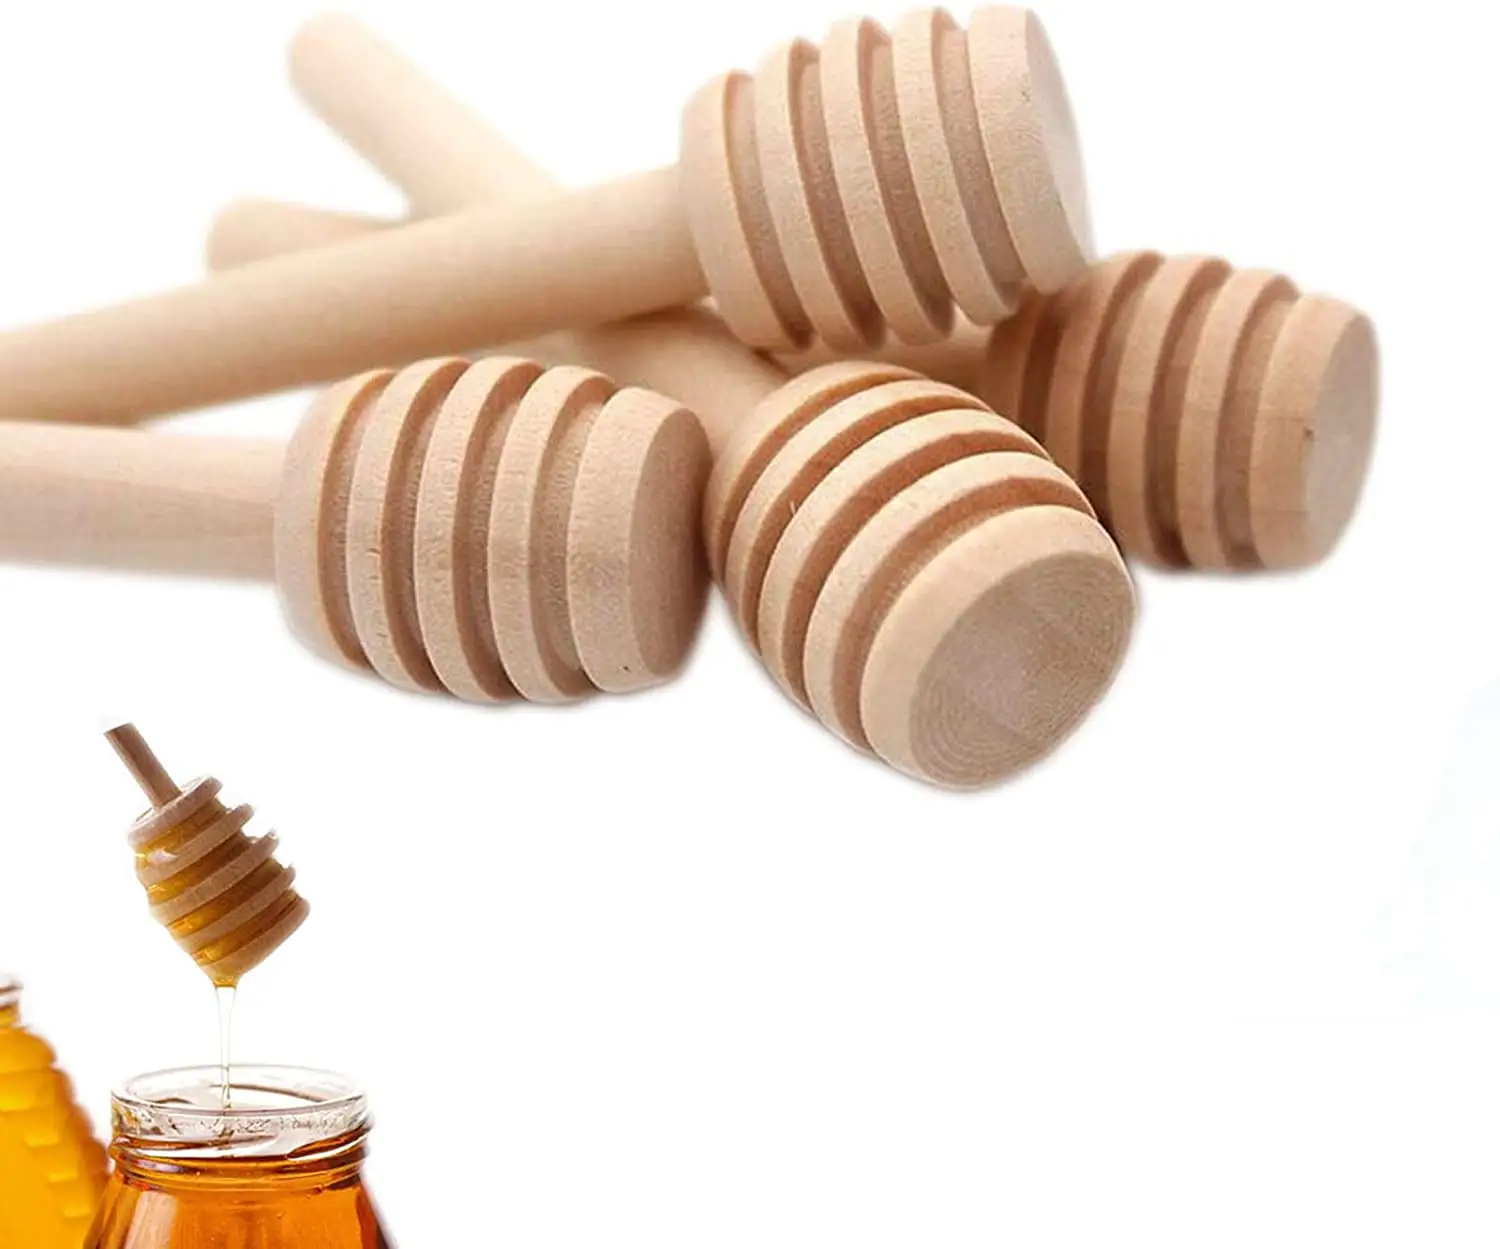 SLT nouveau bâton de miel en bois 3 pouces Mini peigne à miel bâton cuillère à miel